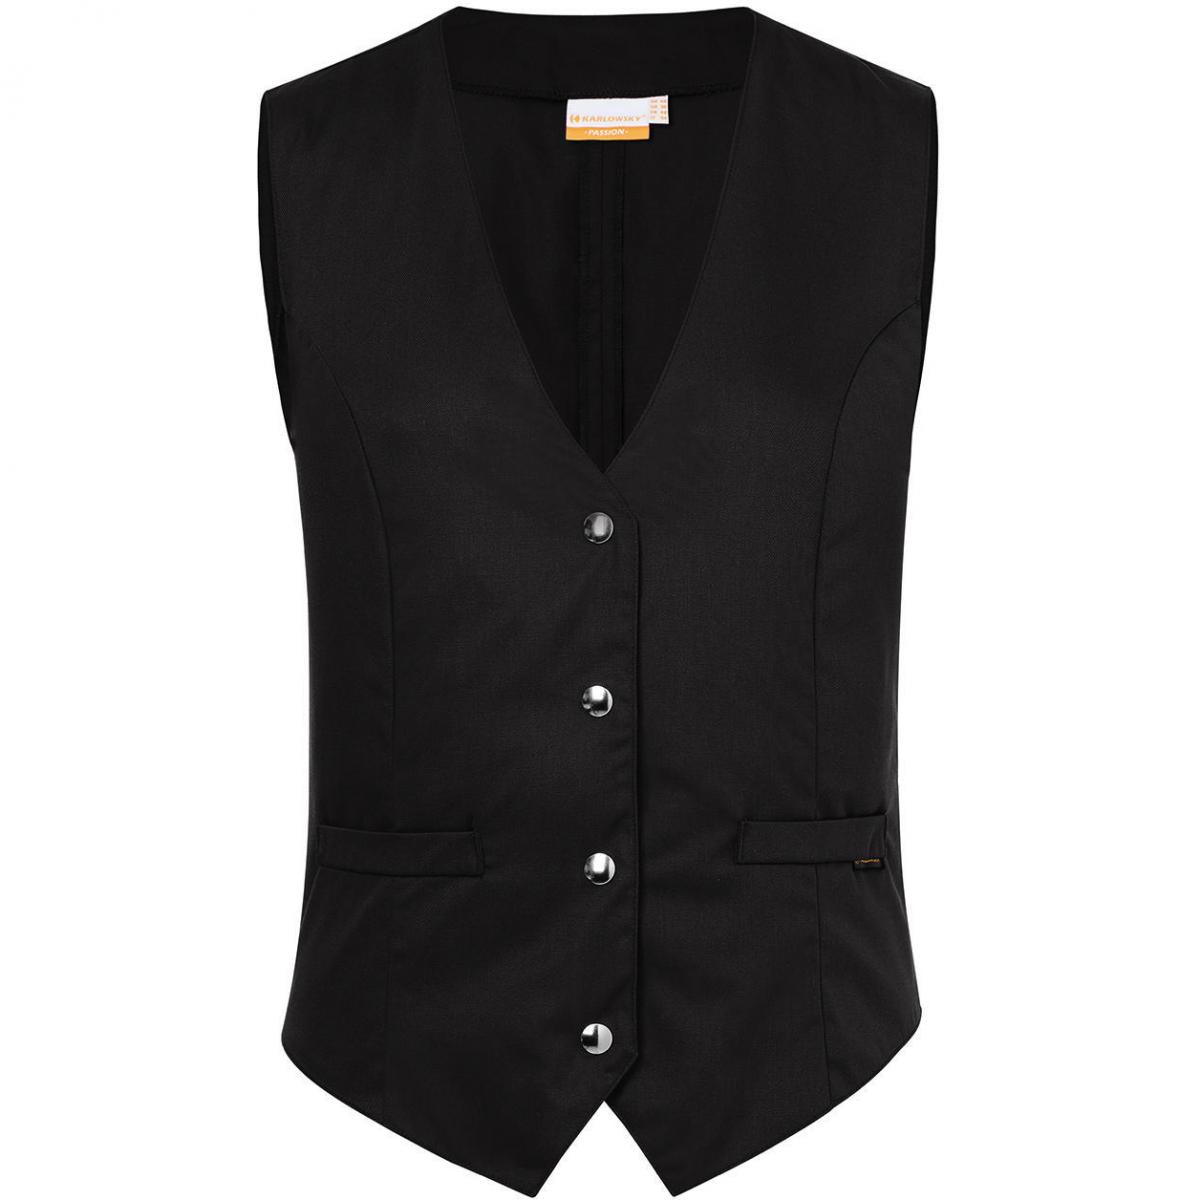 Hersteller: Karlowsky Herstellernummer: WF 2 Artikelbezeichnung: Ladies' Waistcoat Lena Industriewäsche tauglich Farbe: Black